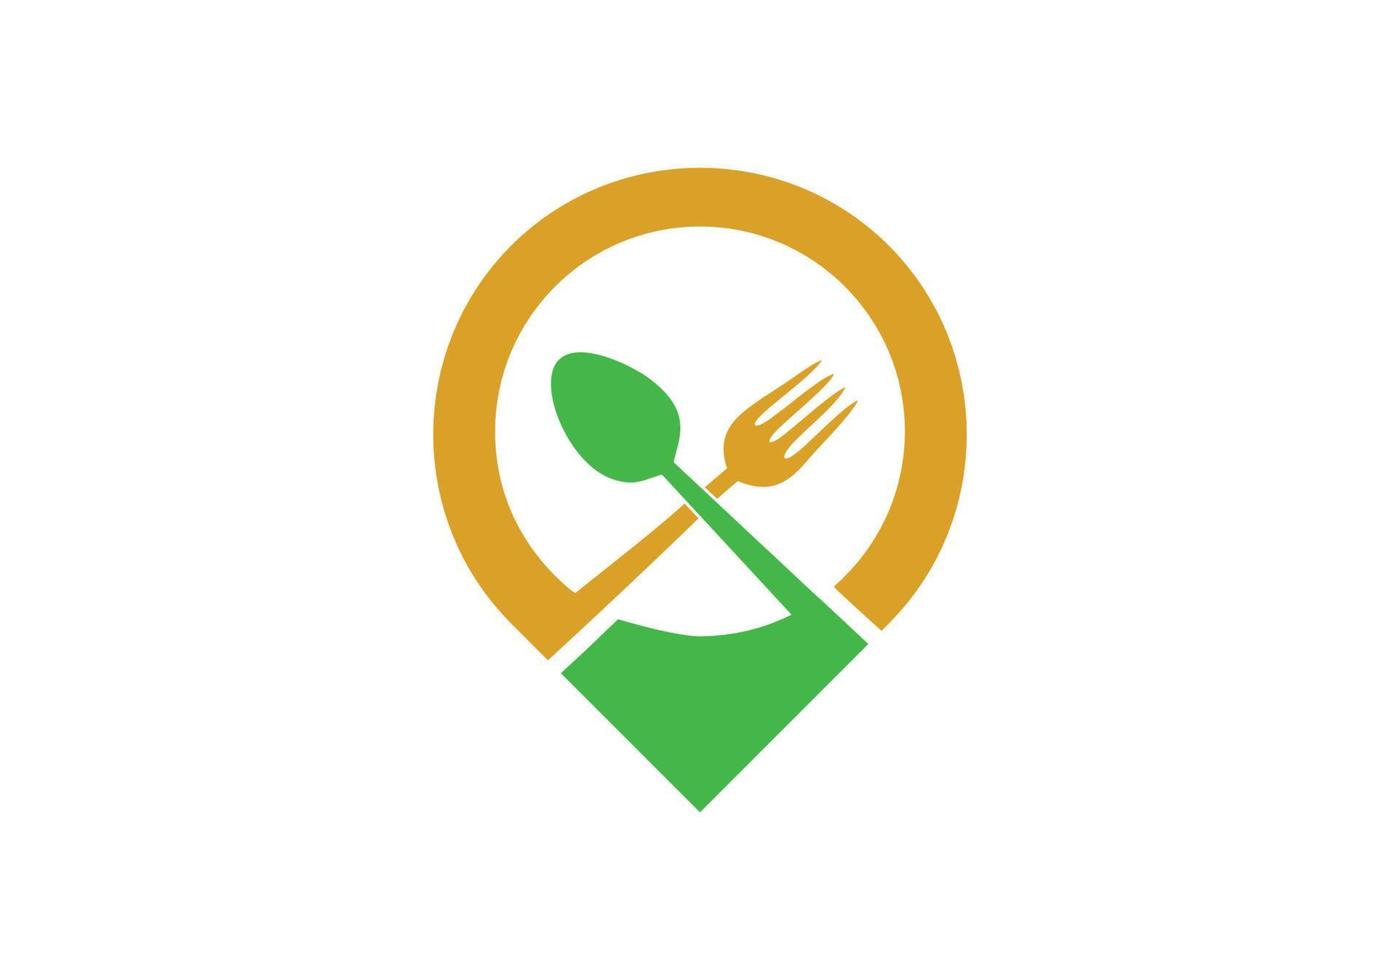 restaurant location logo design inspiration vector